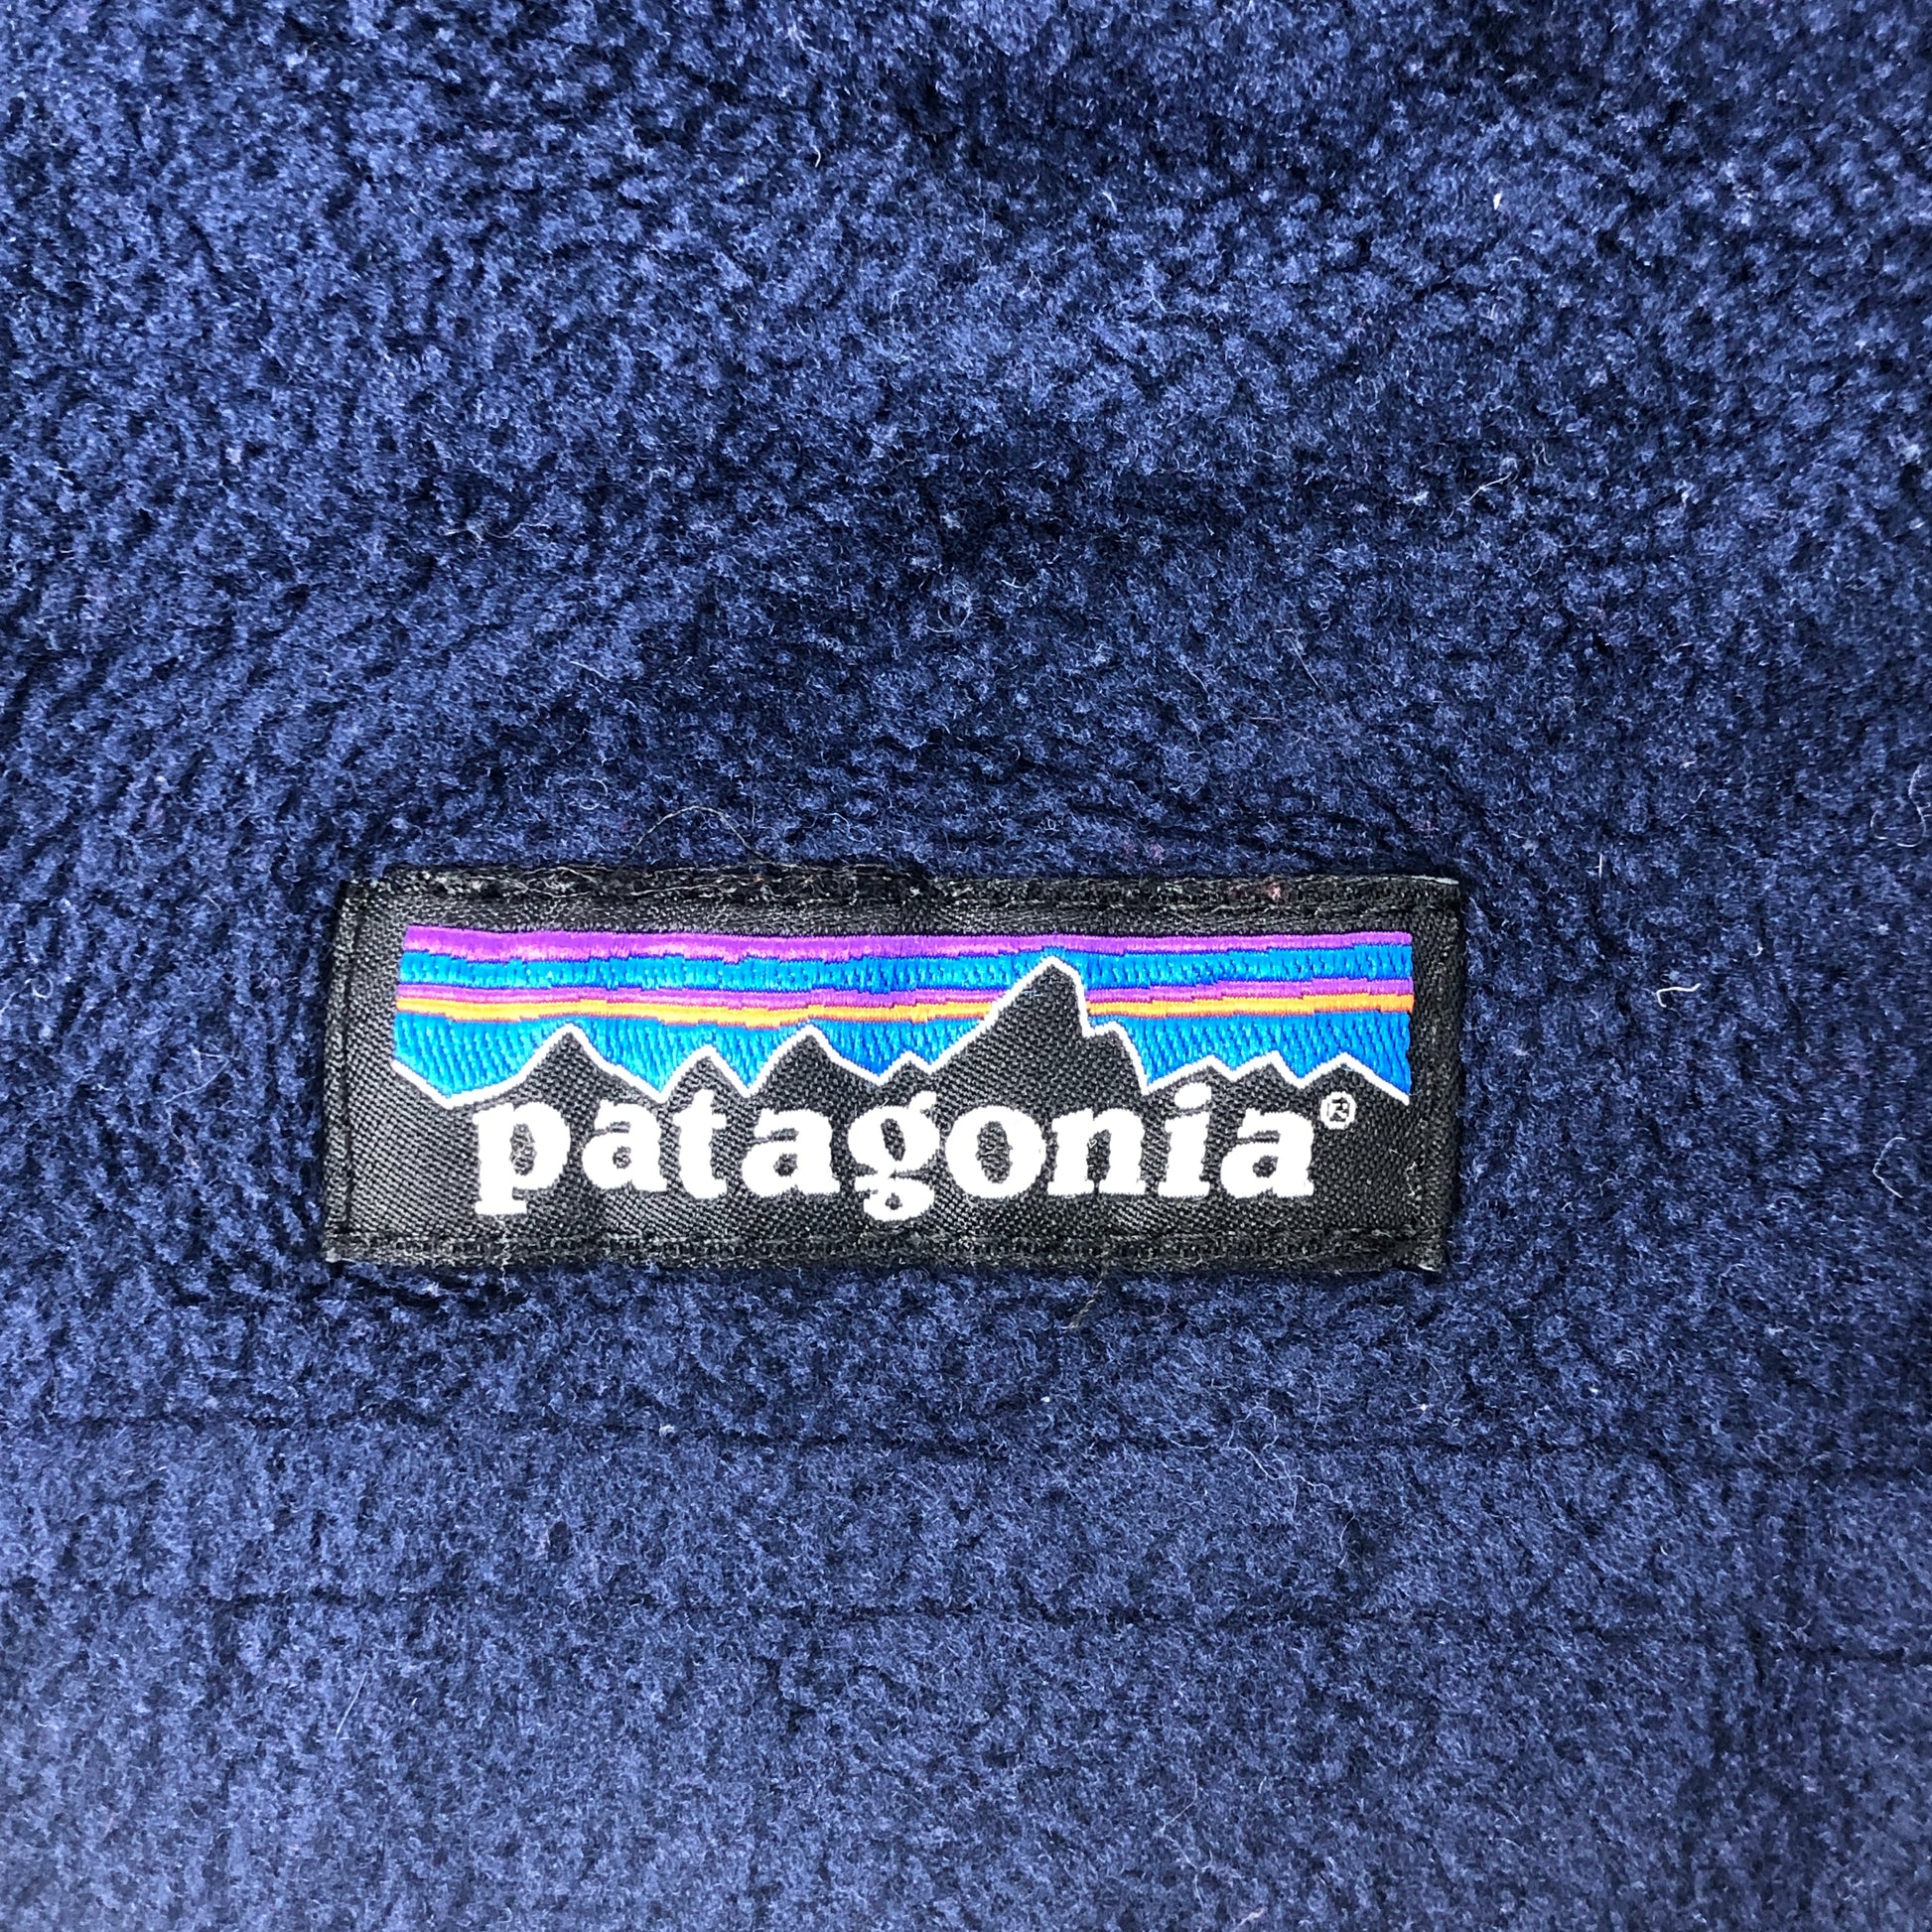 patagoniaパタゴニア　ジッパー✖️リバーシブルフリースブルゾン即決価格